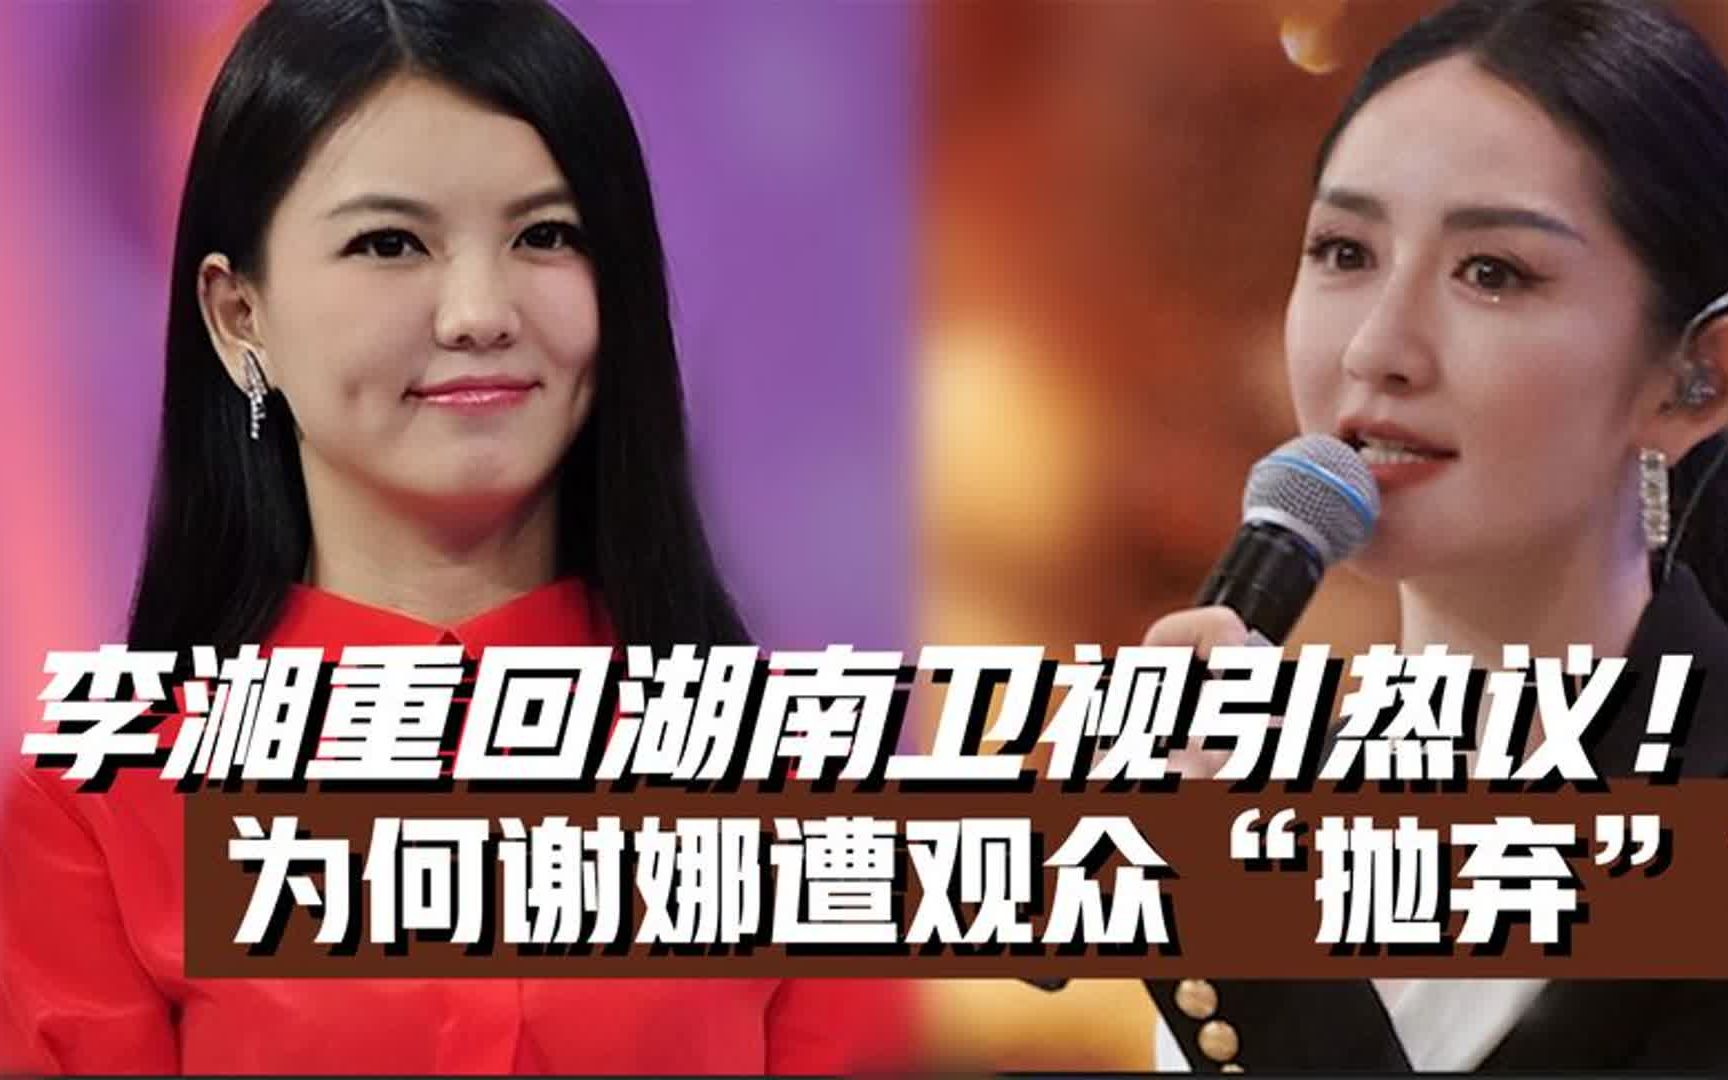 李湘重回湖南卫视!接棒《浪姐4》主持人!为何谢娜遭观众抛弃?